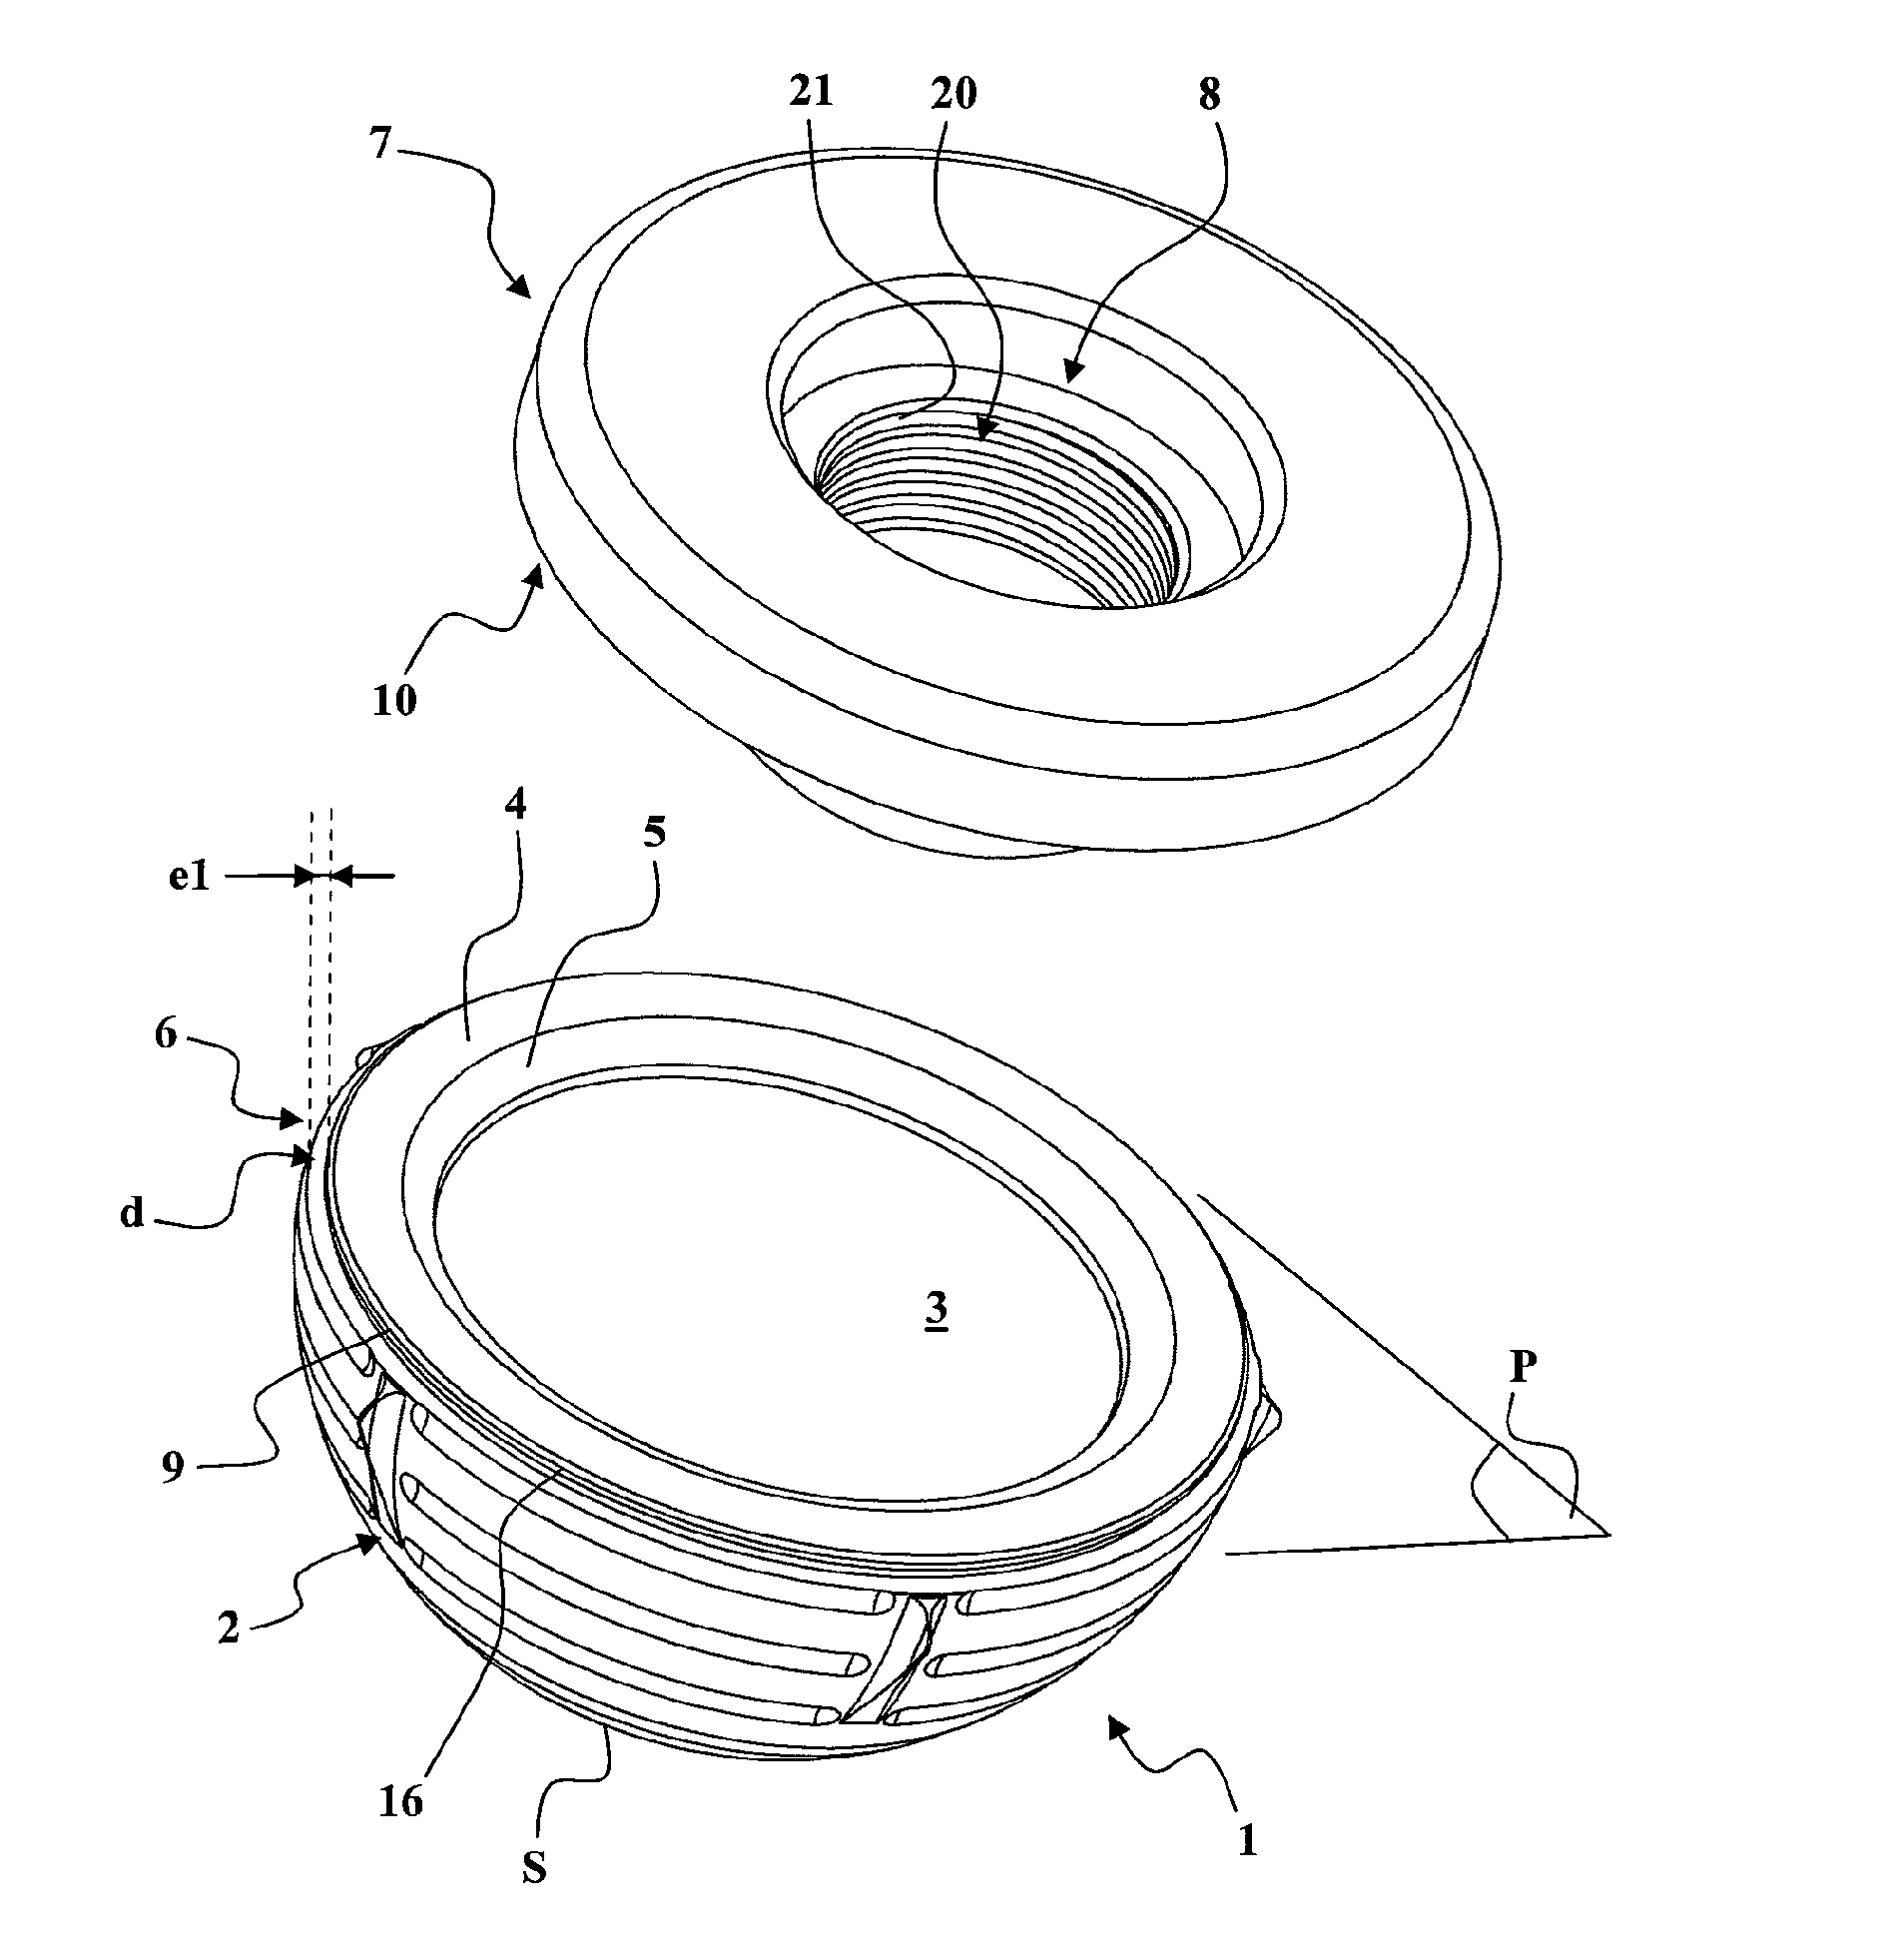 Method for producing a ceramic acetabulum